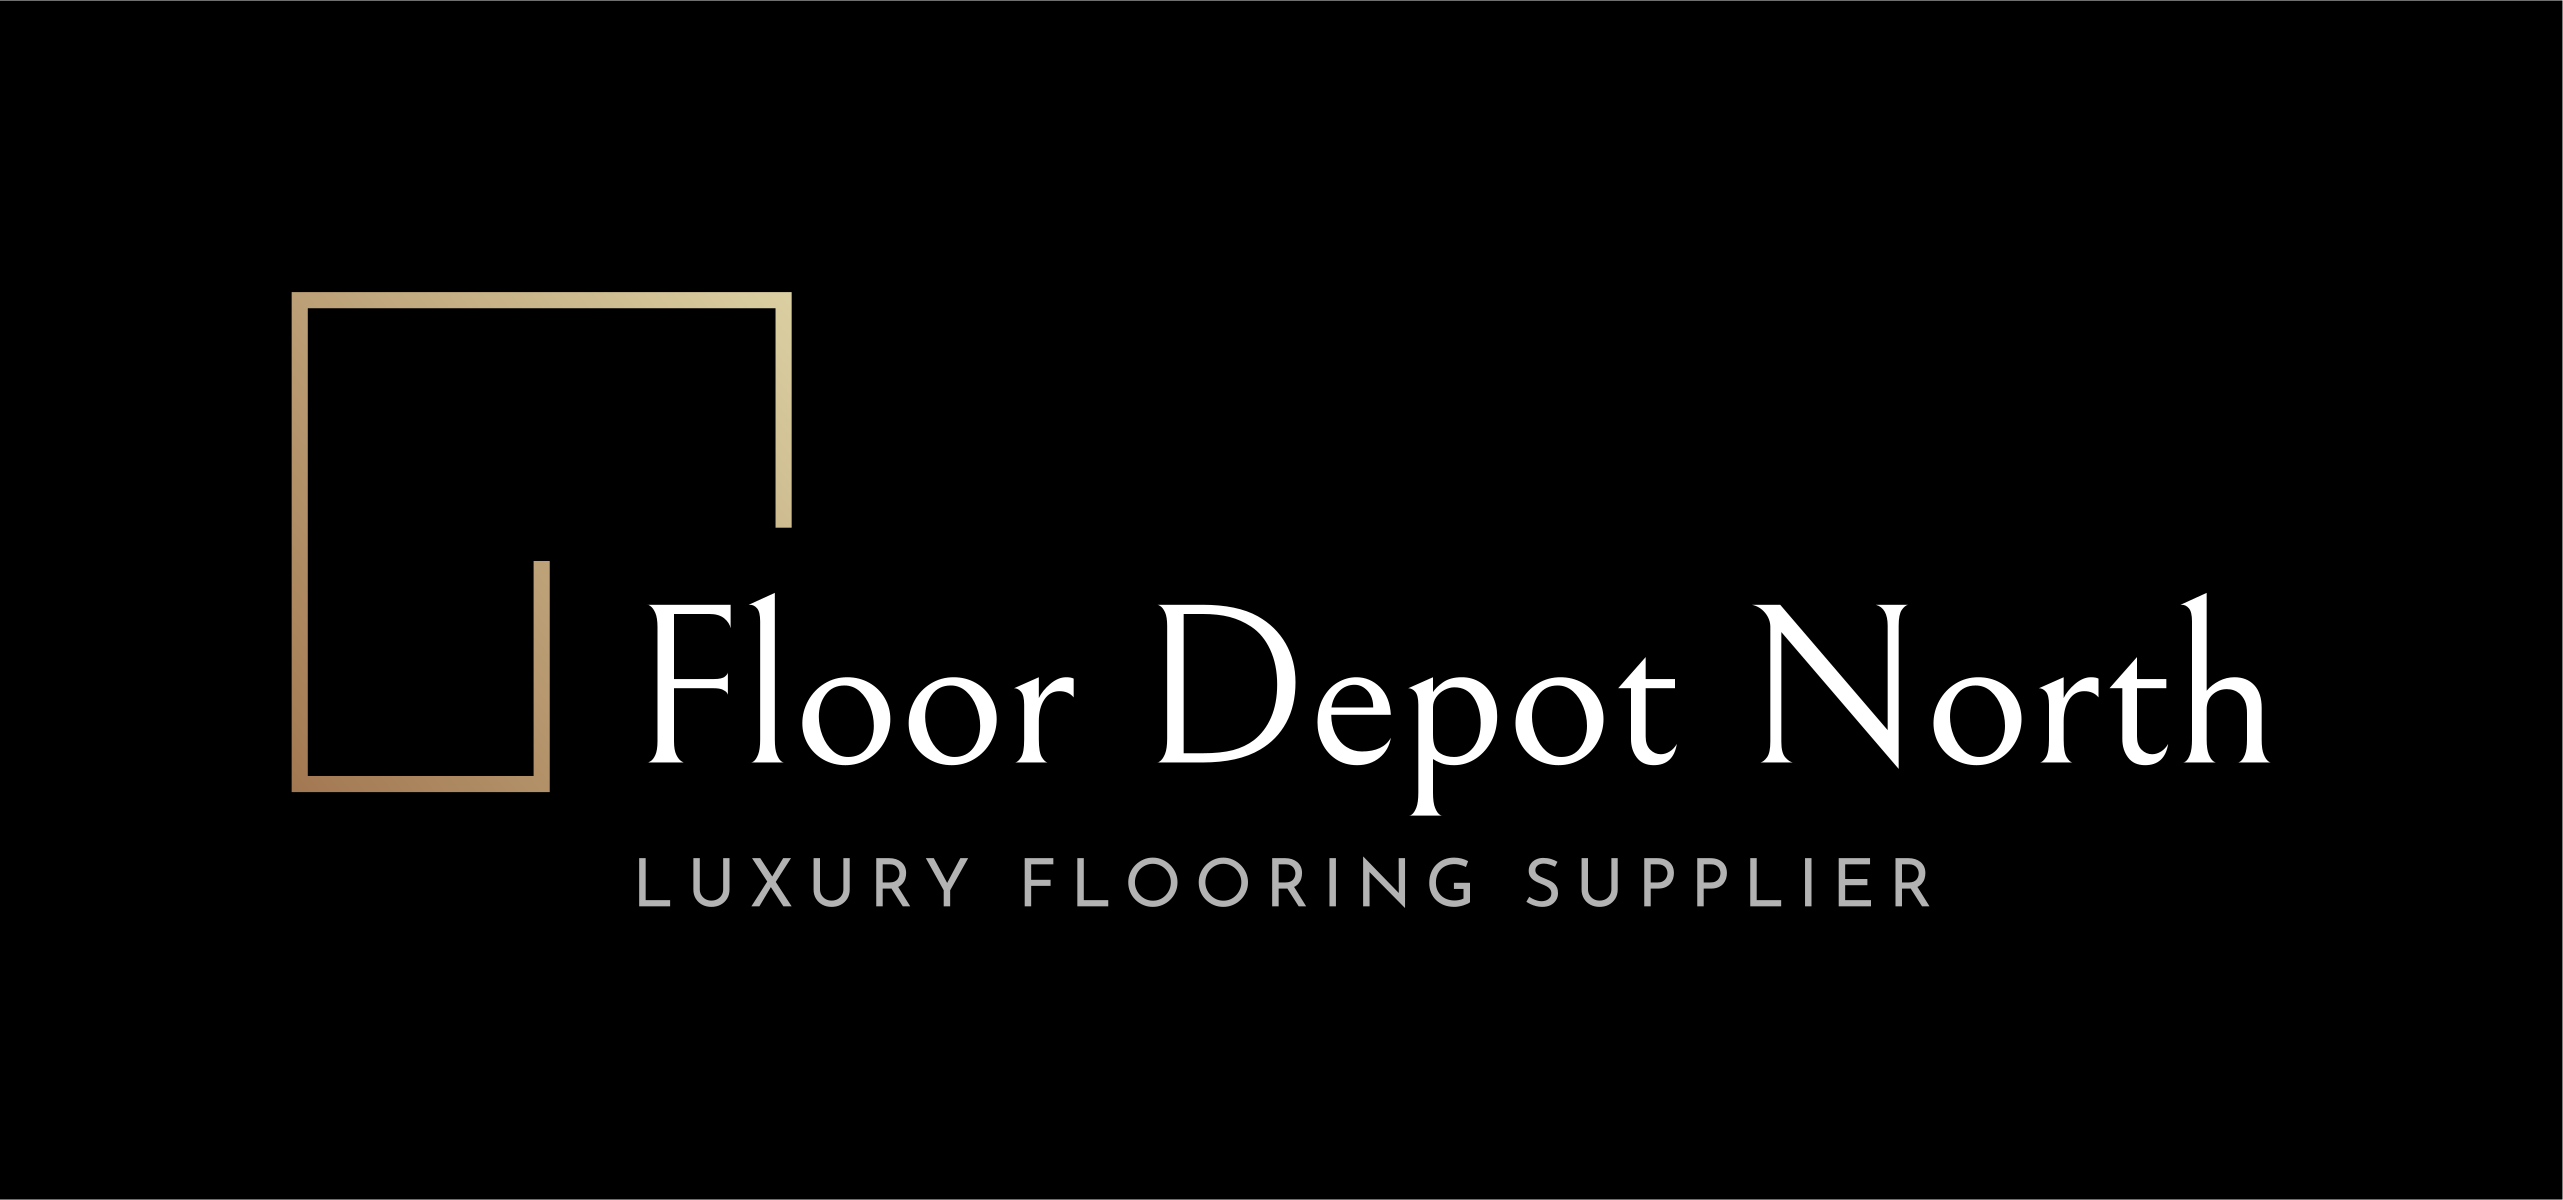 Floor Depot North logo